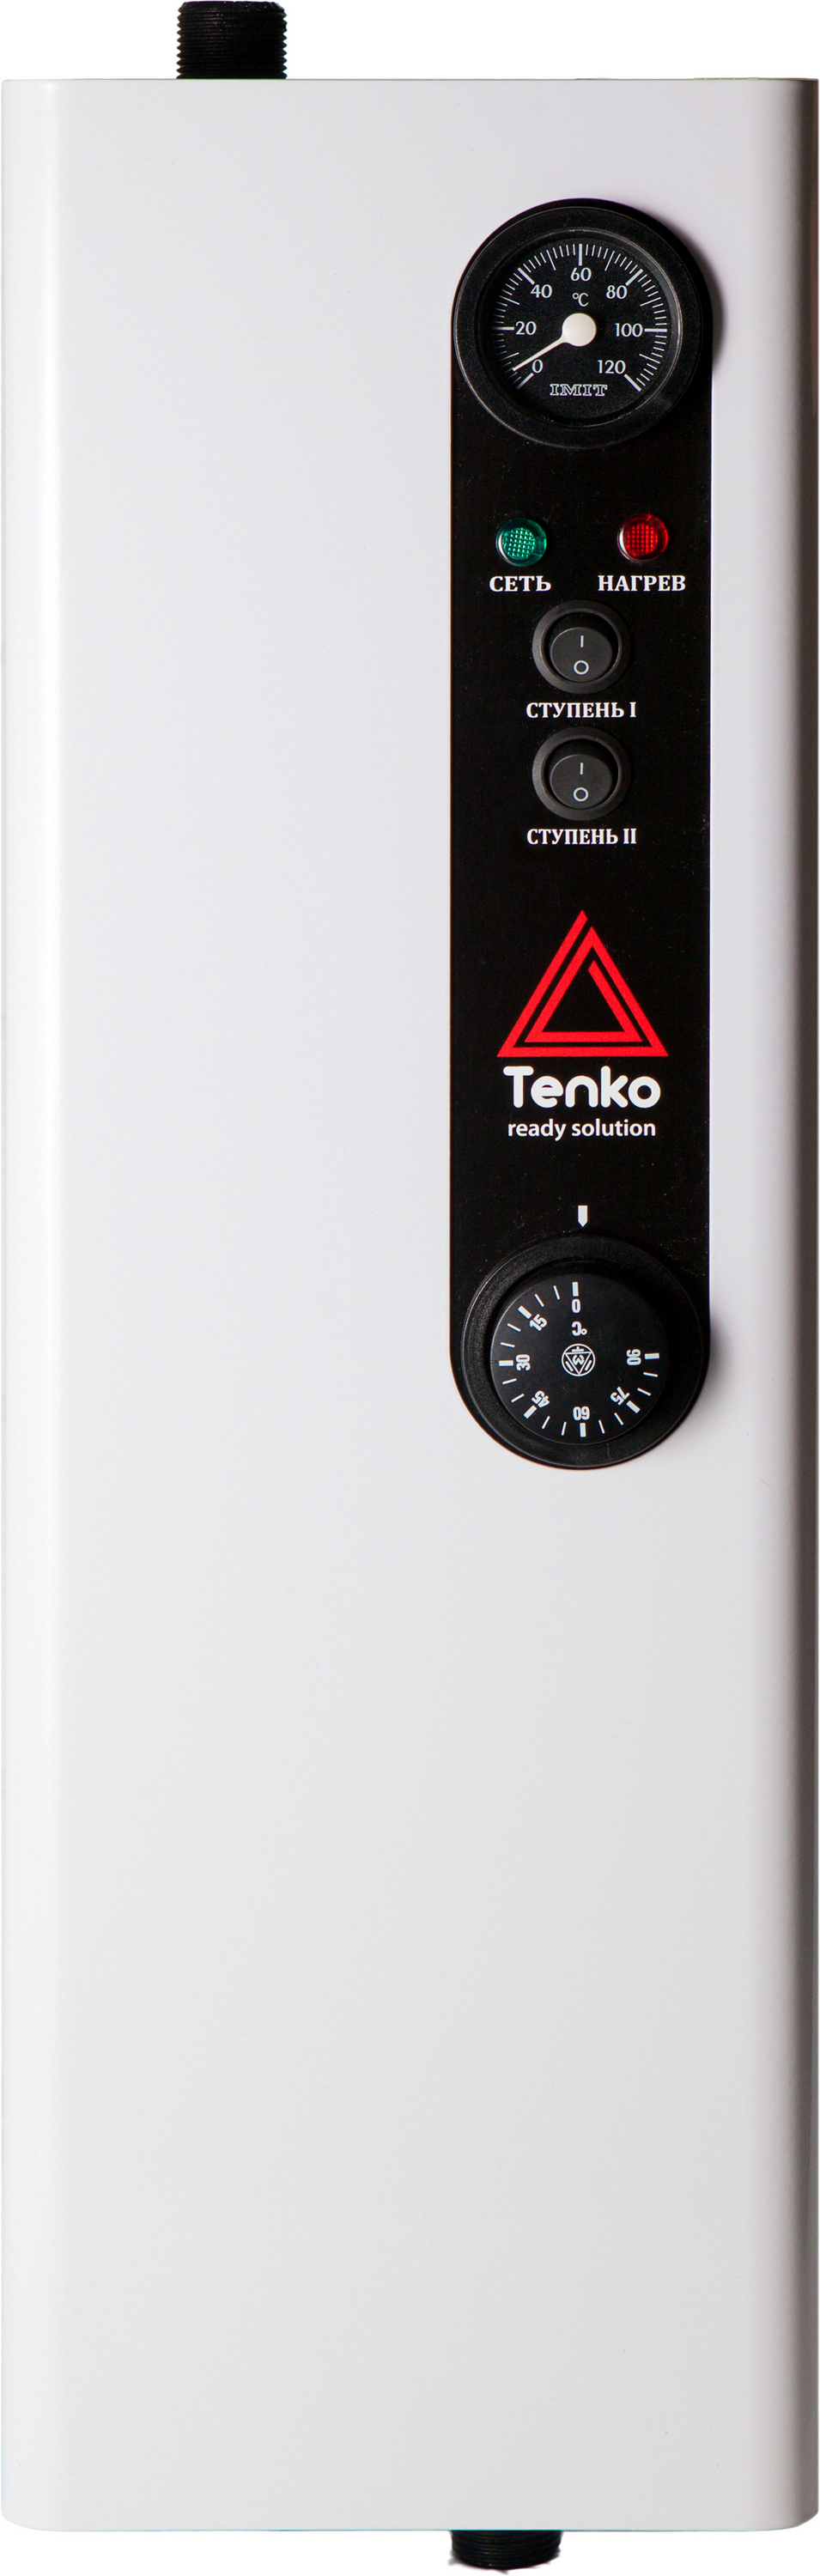 Отзывы трехфазный электрокотел на 380 вольт Tenko Эконом 15 380 в Украине